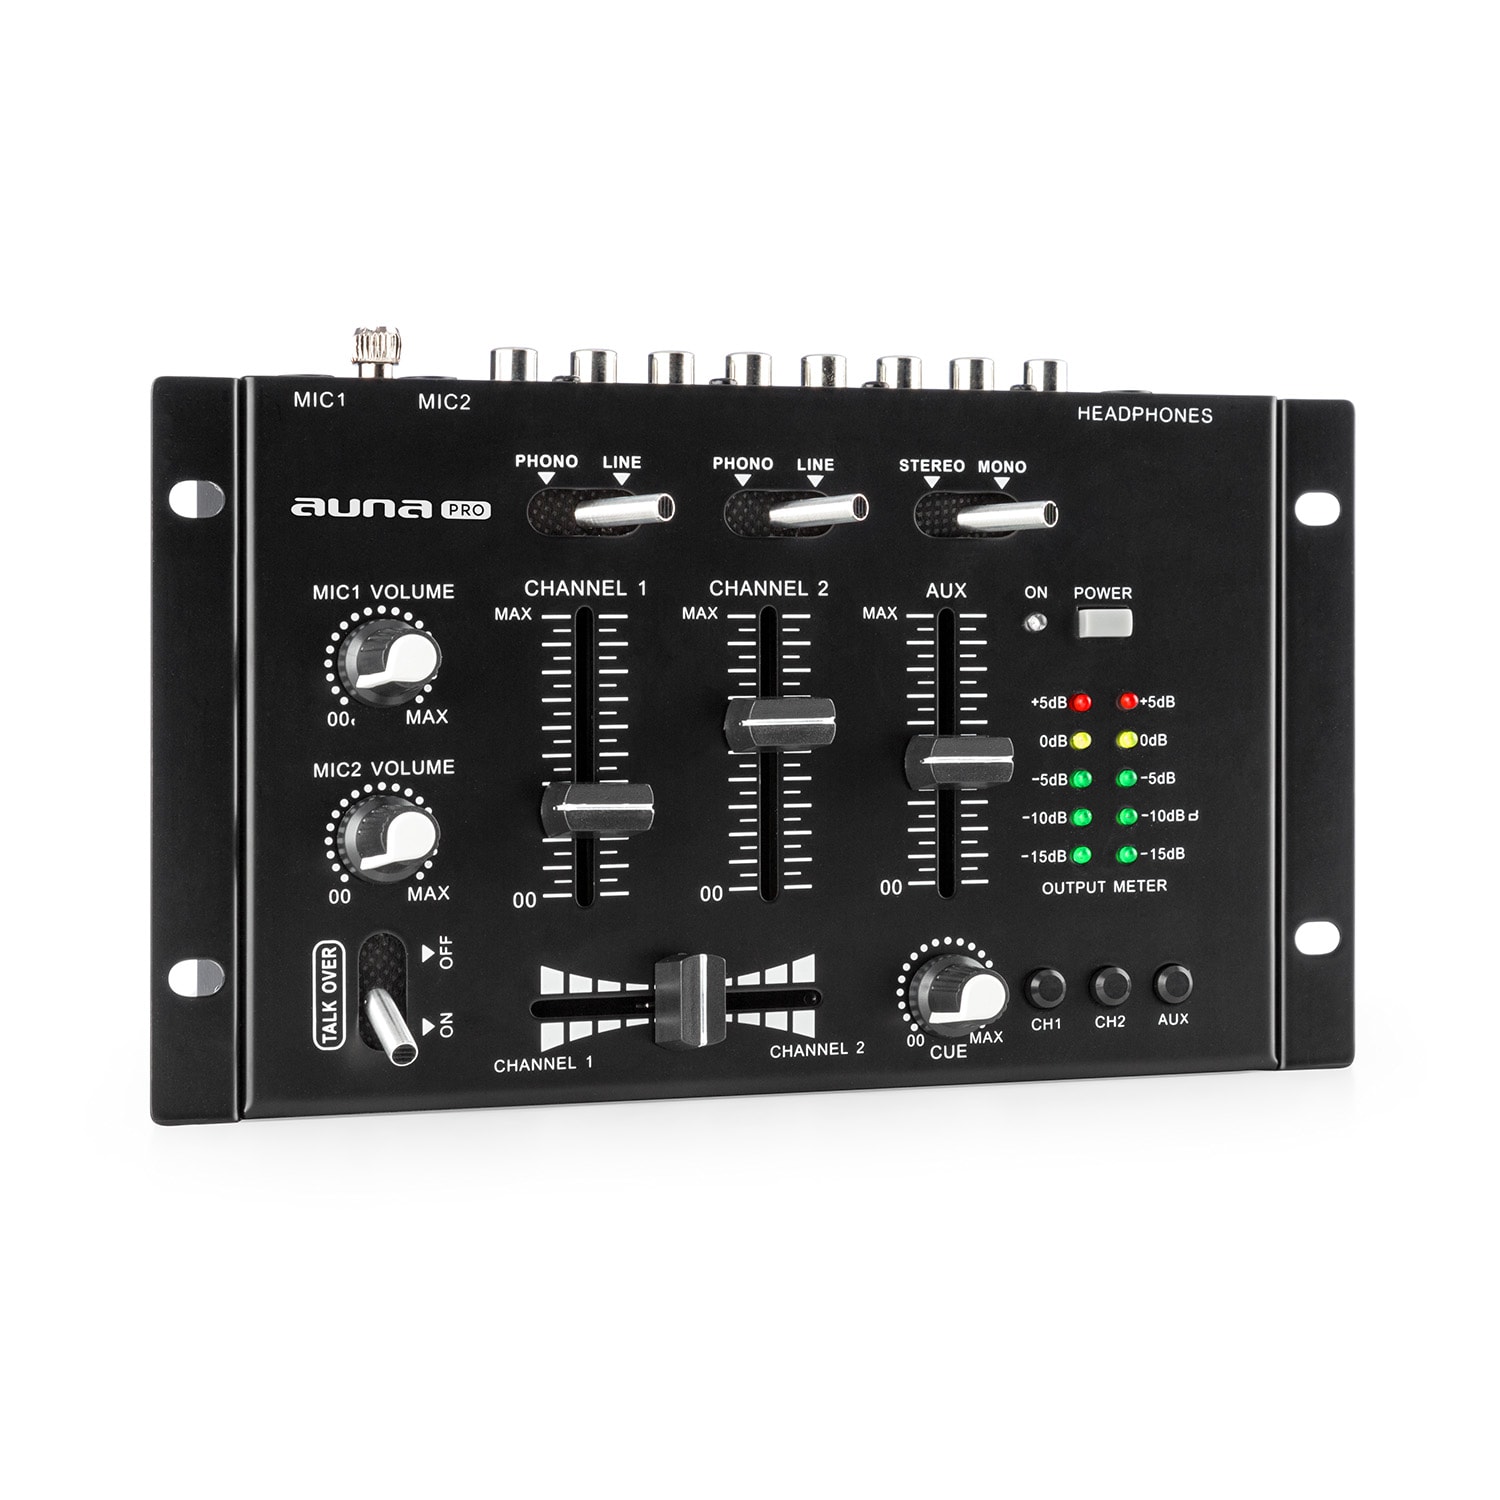 Auna Pro TMX-2211, MKII, DJ-Mixer, 3/2 csatorna, crossfader, talkover, rack-ba szerelés, fekete